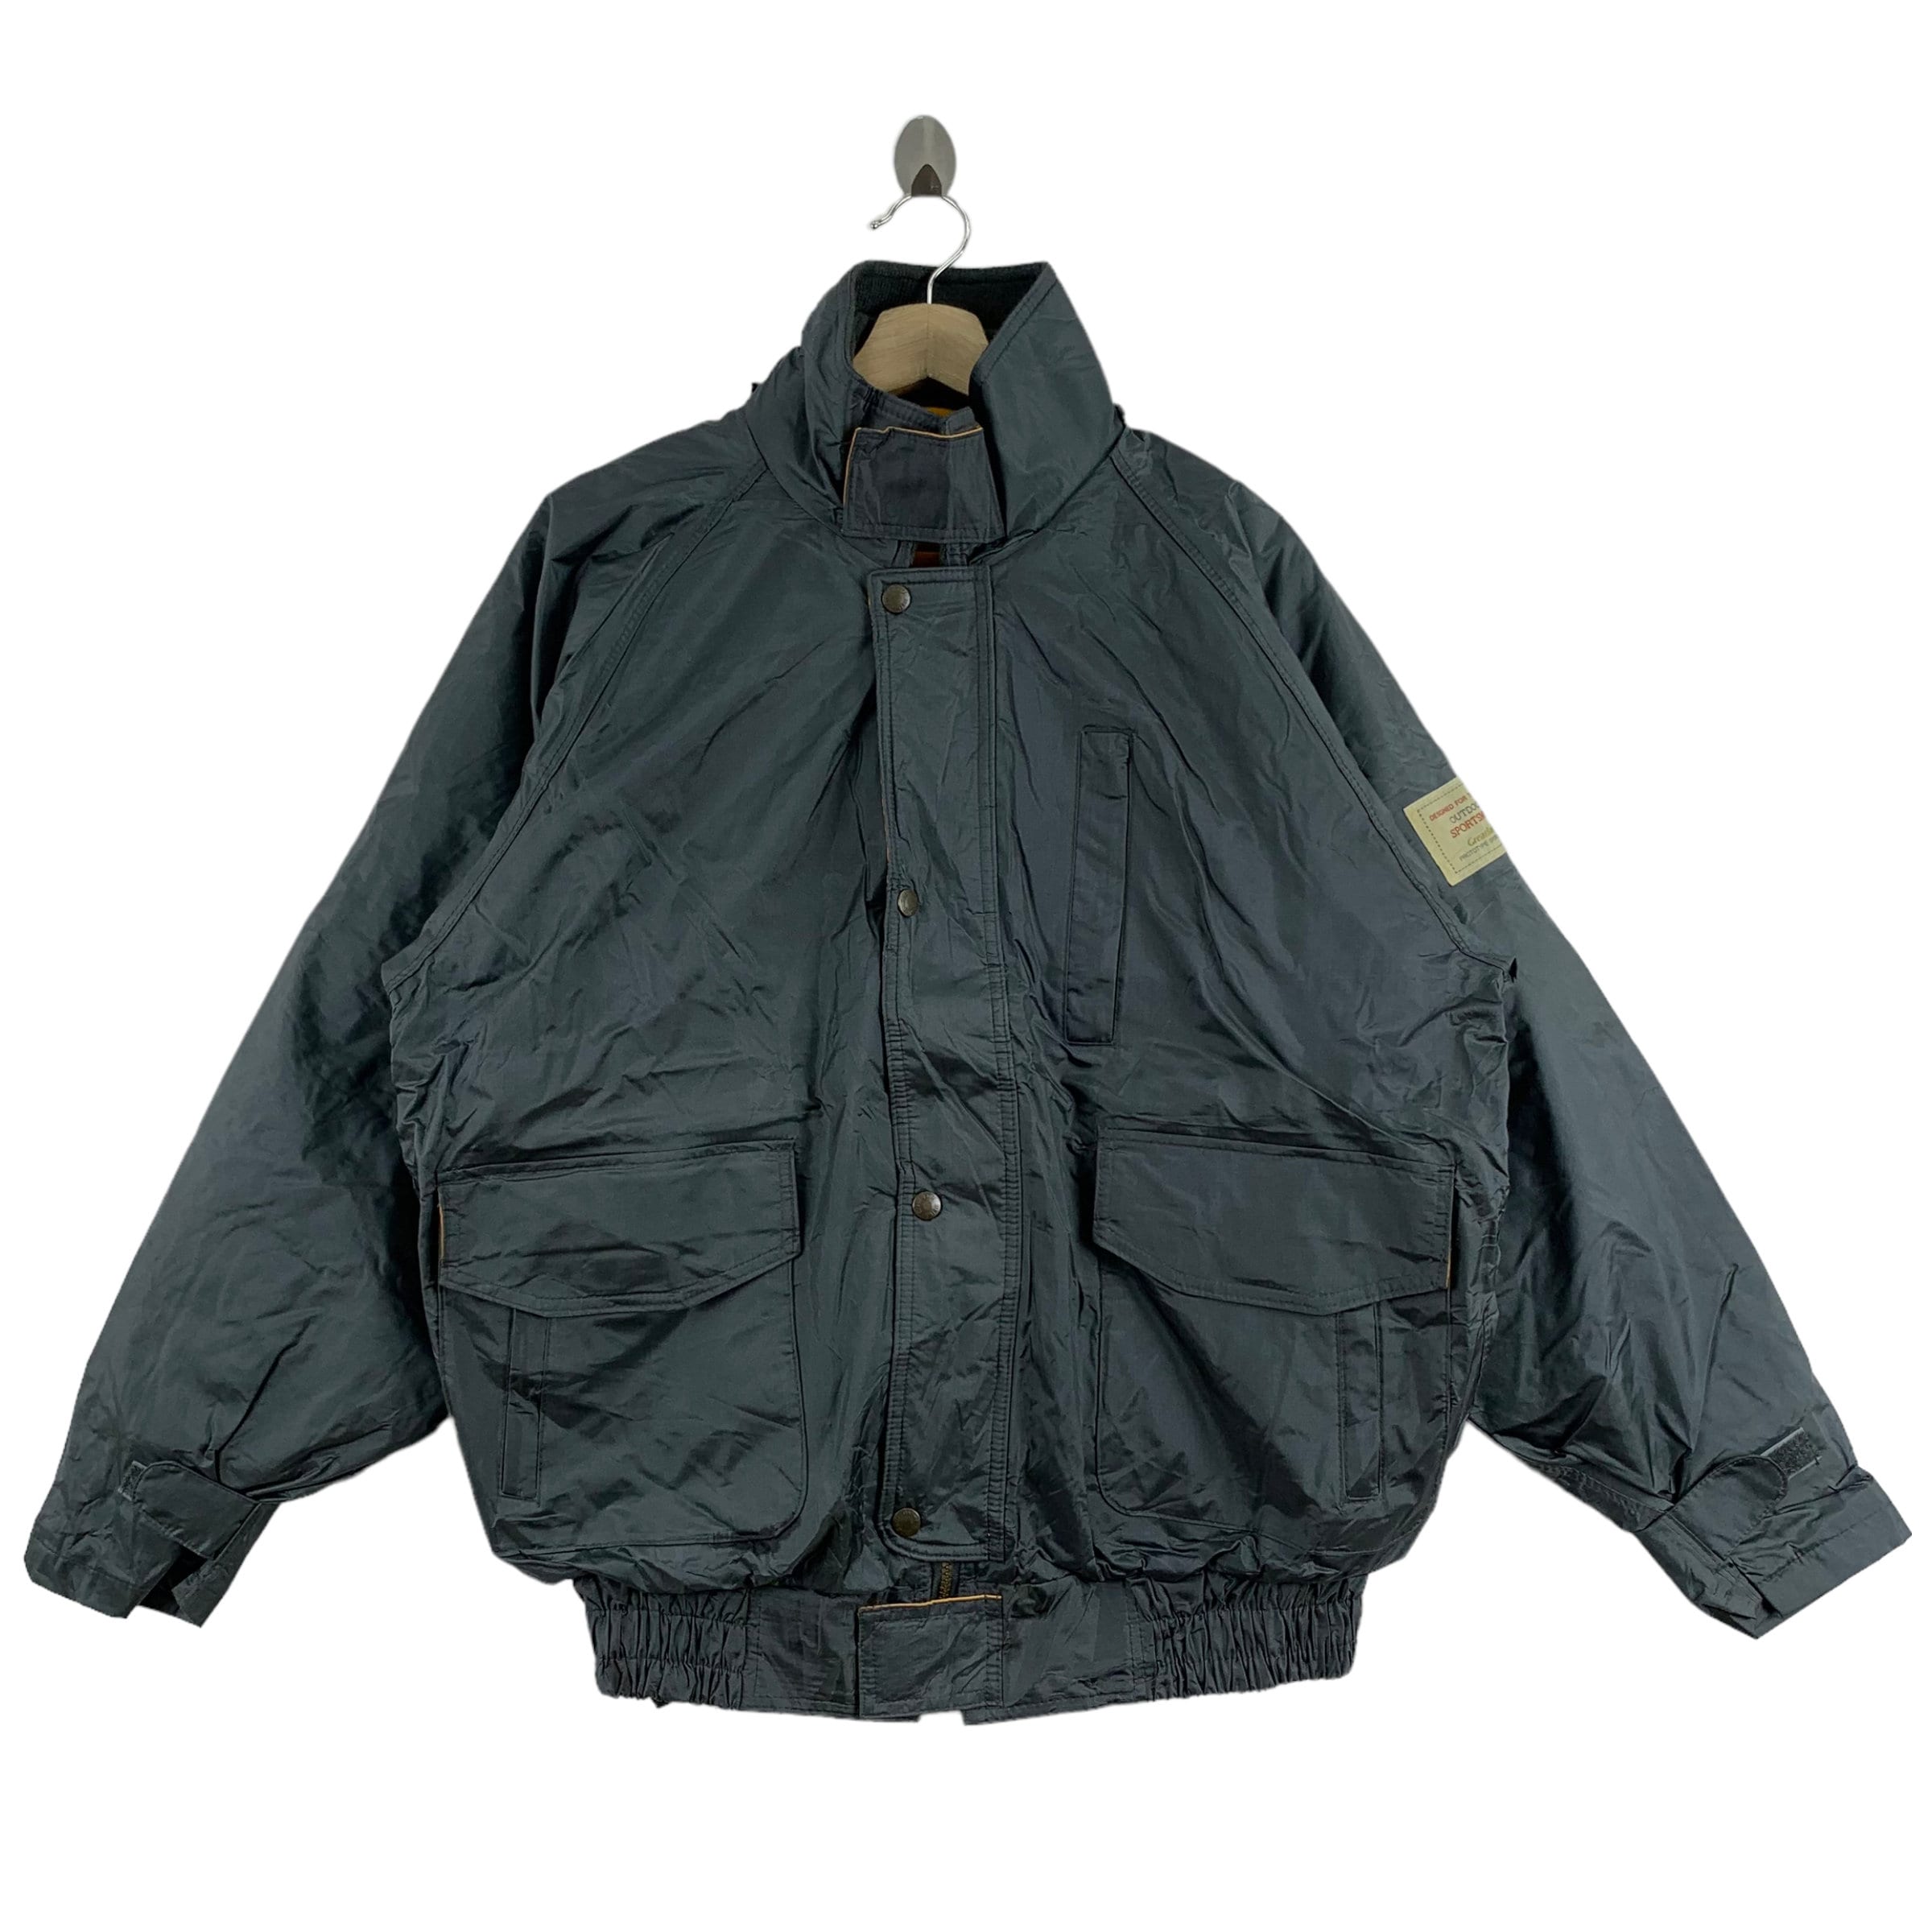 Vintage Daiwa Jacket -  UK